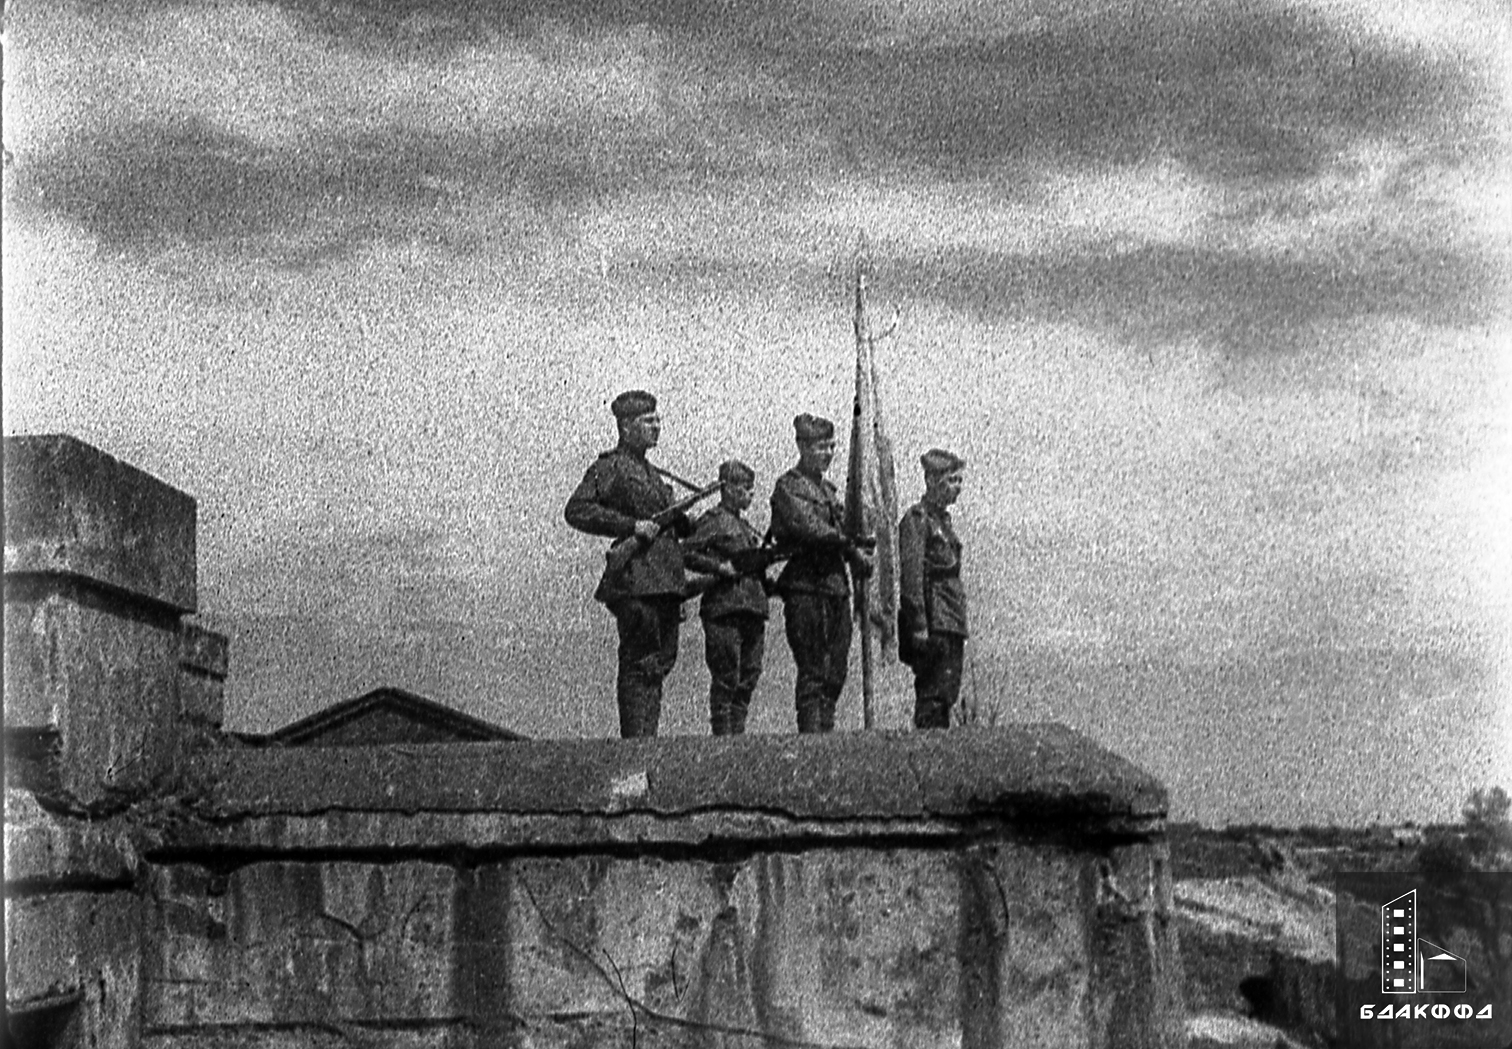 Водружение красного знамени над Брестской крепостью воинами Красной Армии в ознаменование изгнания немецко-фашистских захватчиков из города (в первом ряду слева А.Дробязко, справа И.Кутовой )-с. 0